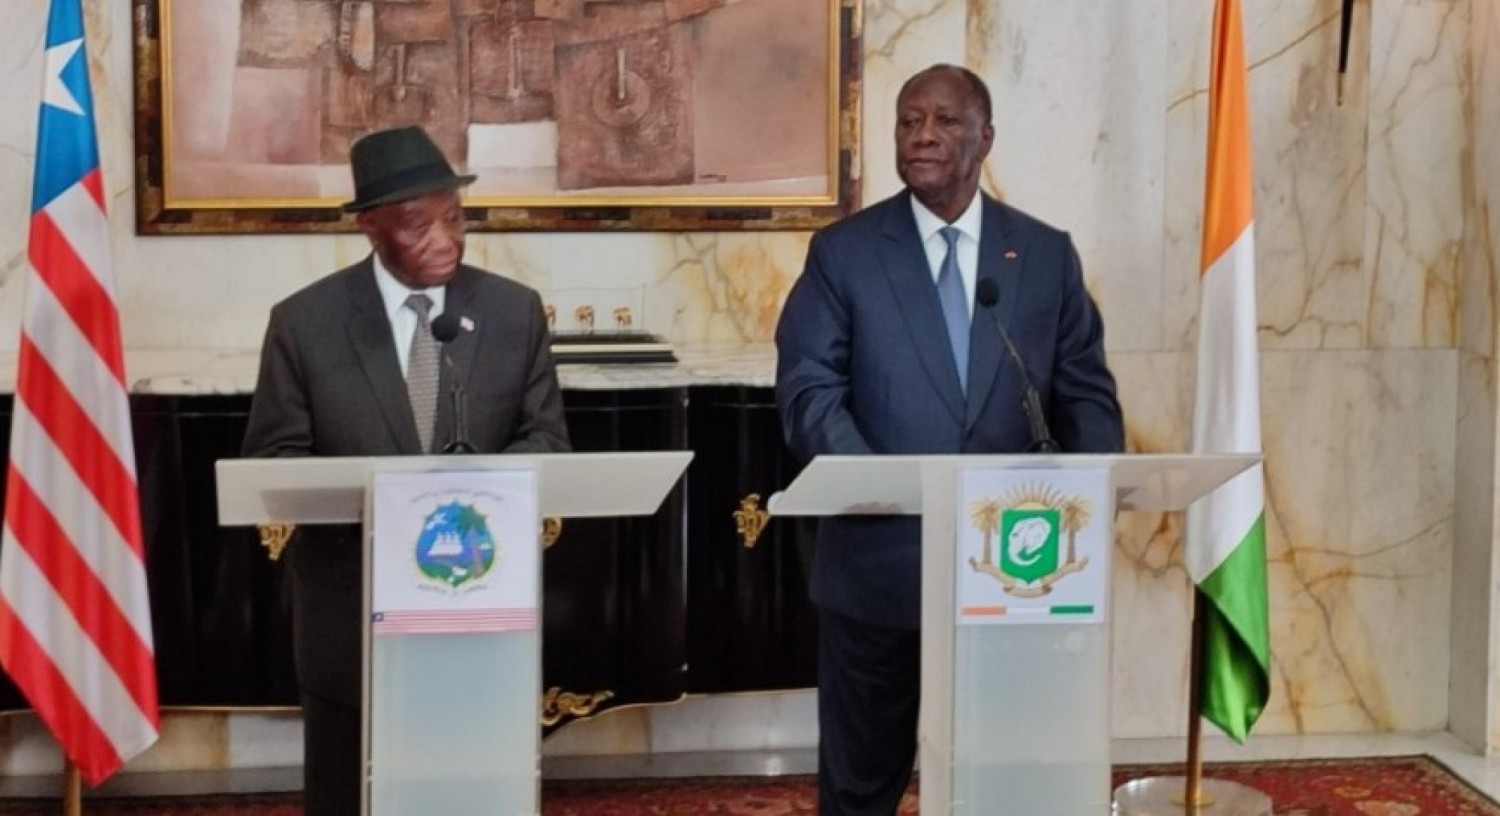 Côte d'Ivoire-Libéria: Ouattara salue Joseph Nyuama Boakai pour son accession au pouvoir d'état par des élections démocratiques